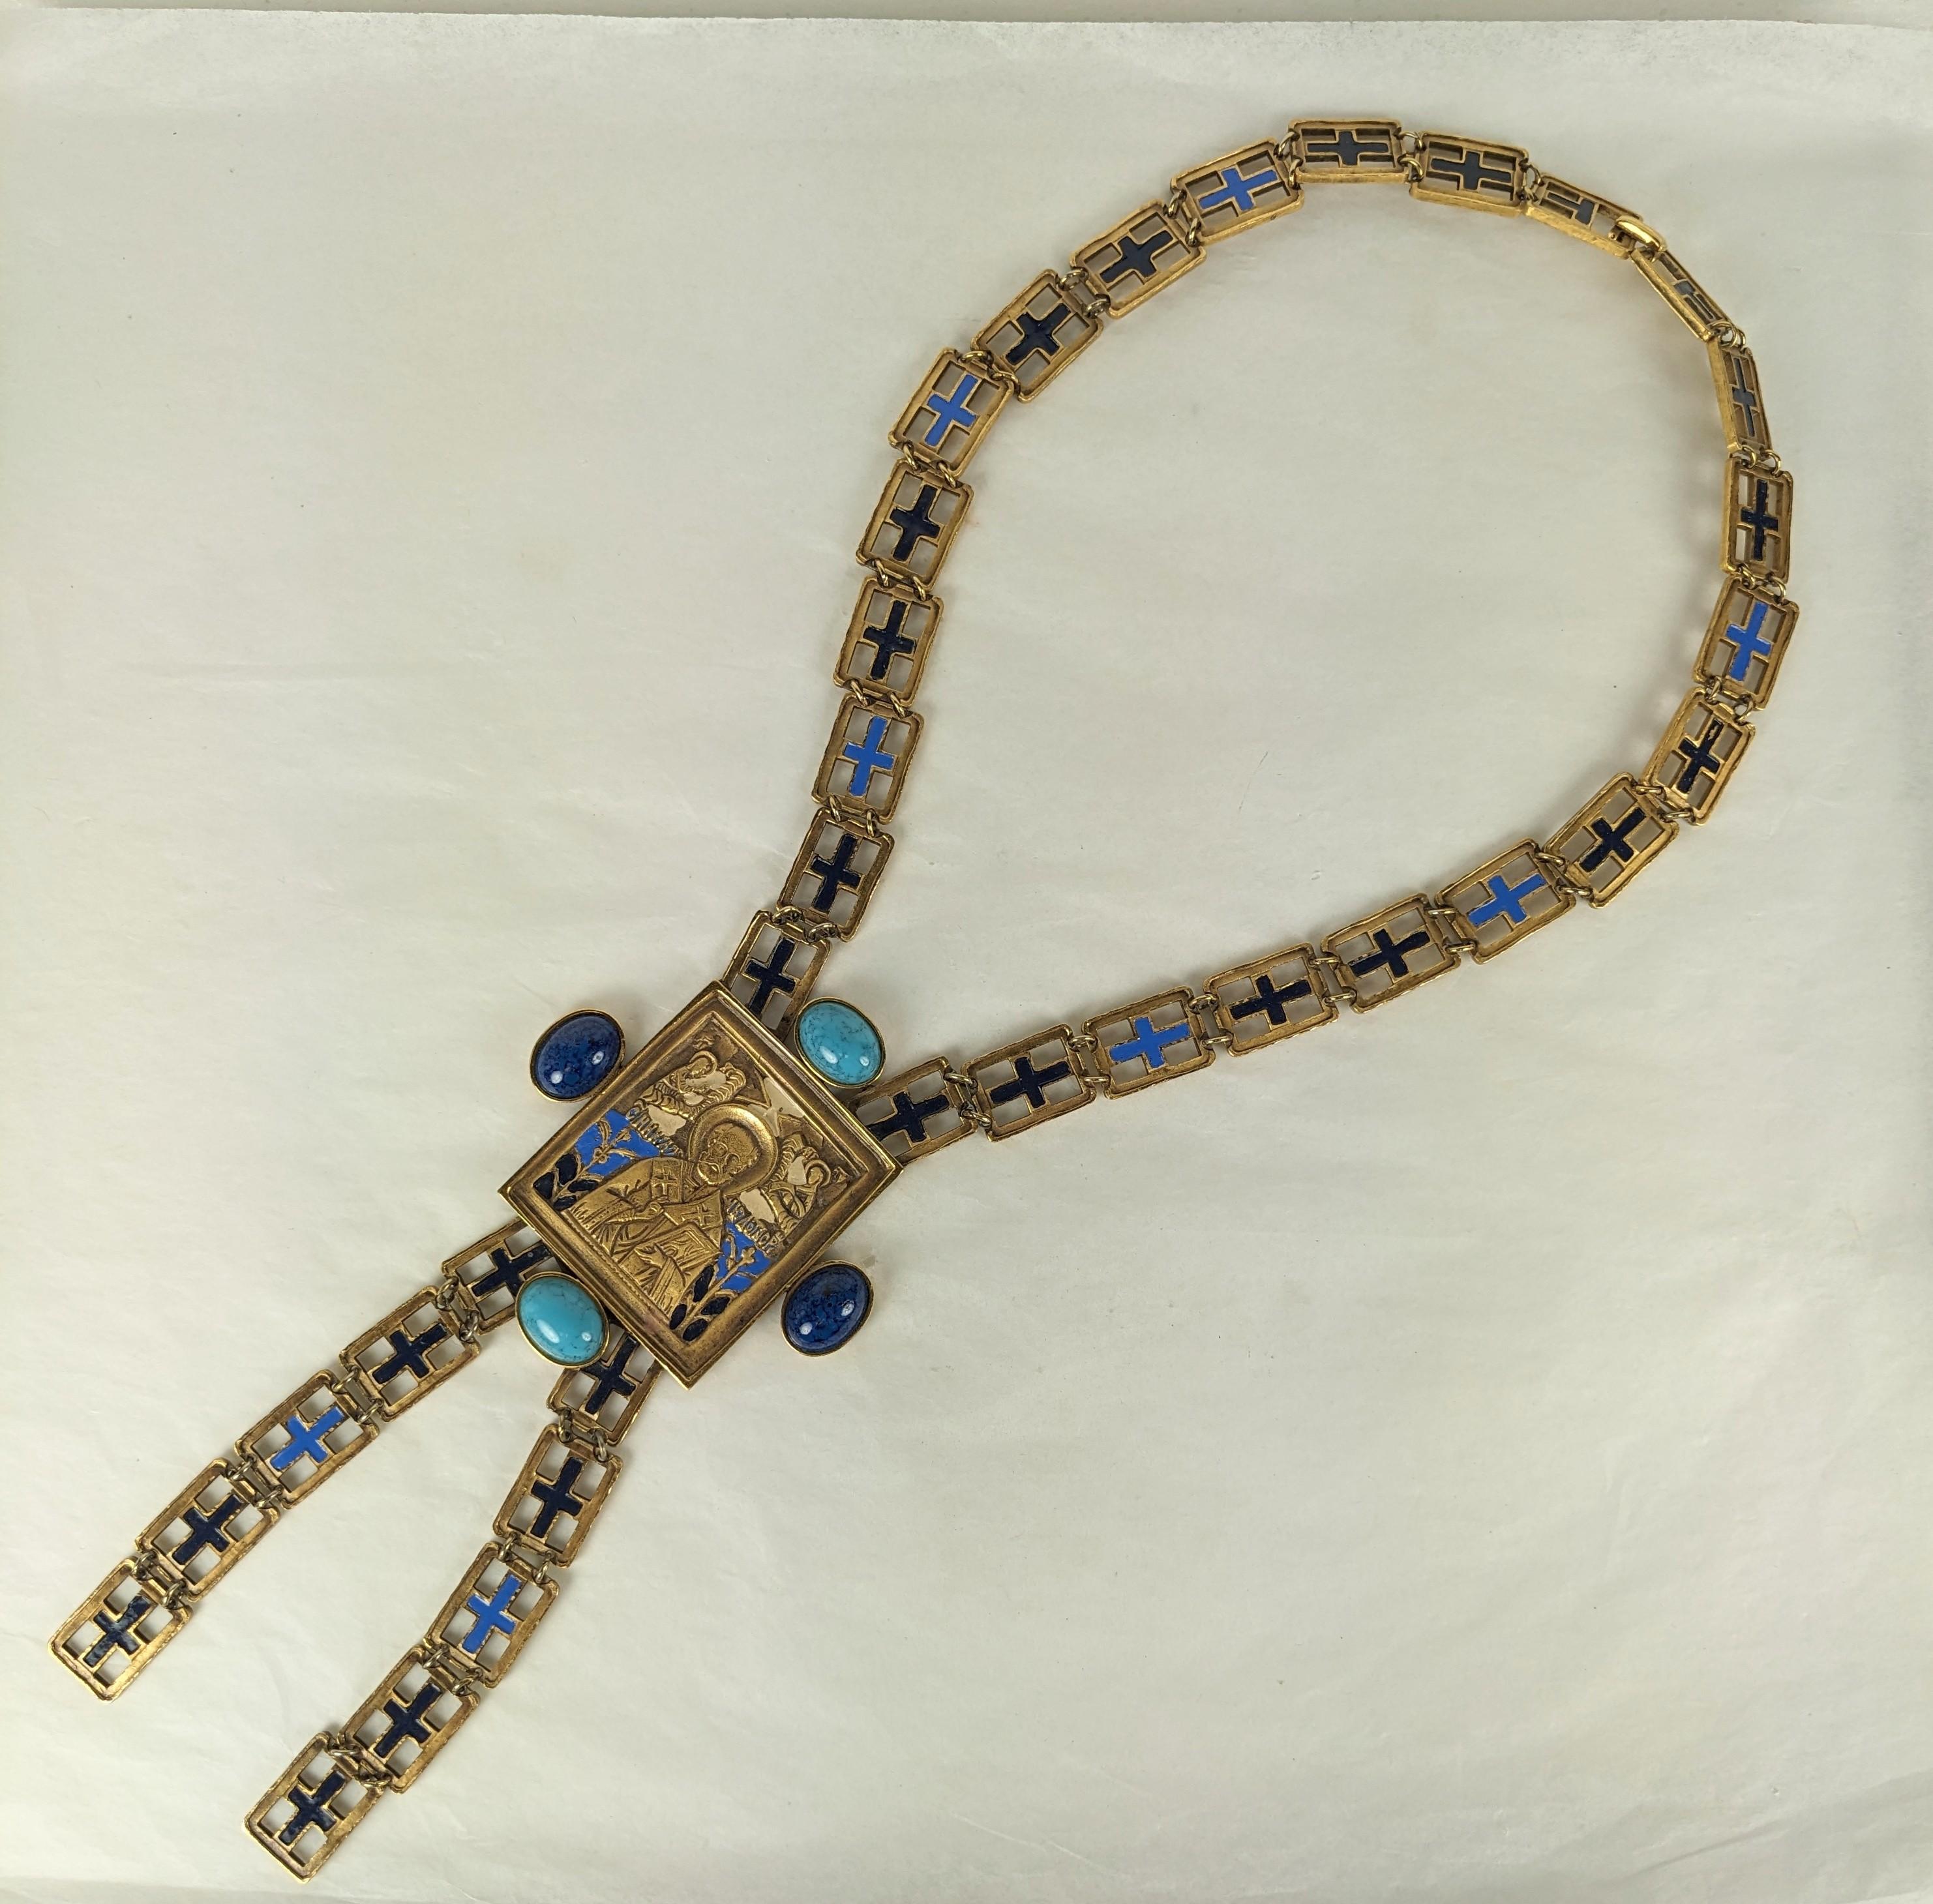 Seltene Diane Love for Trifari Russische Ikonen-Halskette aus den 1970er Jahren. Basierend auf einer russischen reisenden Ikone aus dem 18. Jahrhundert, die in eine Halskette mit Emaille und Cabochon-Steinen umgewandelt wurde, um Türkis und Lapis zu